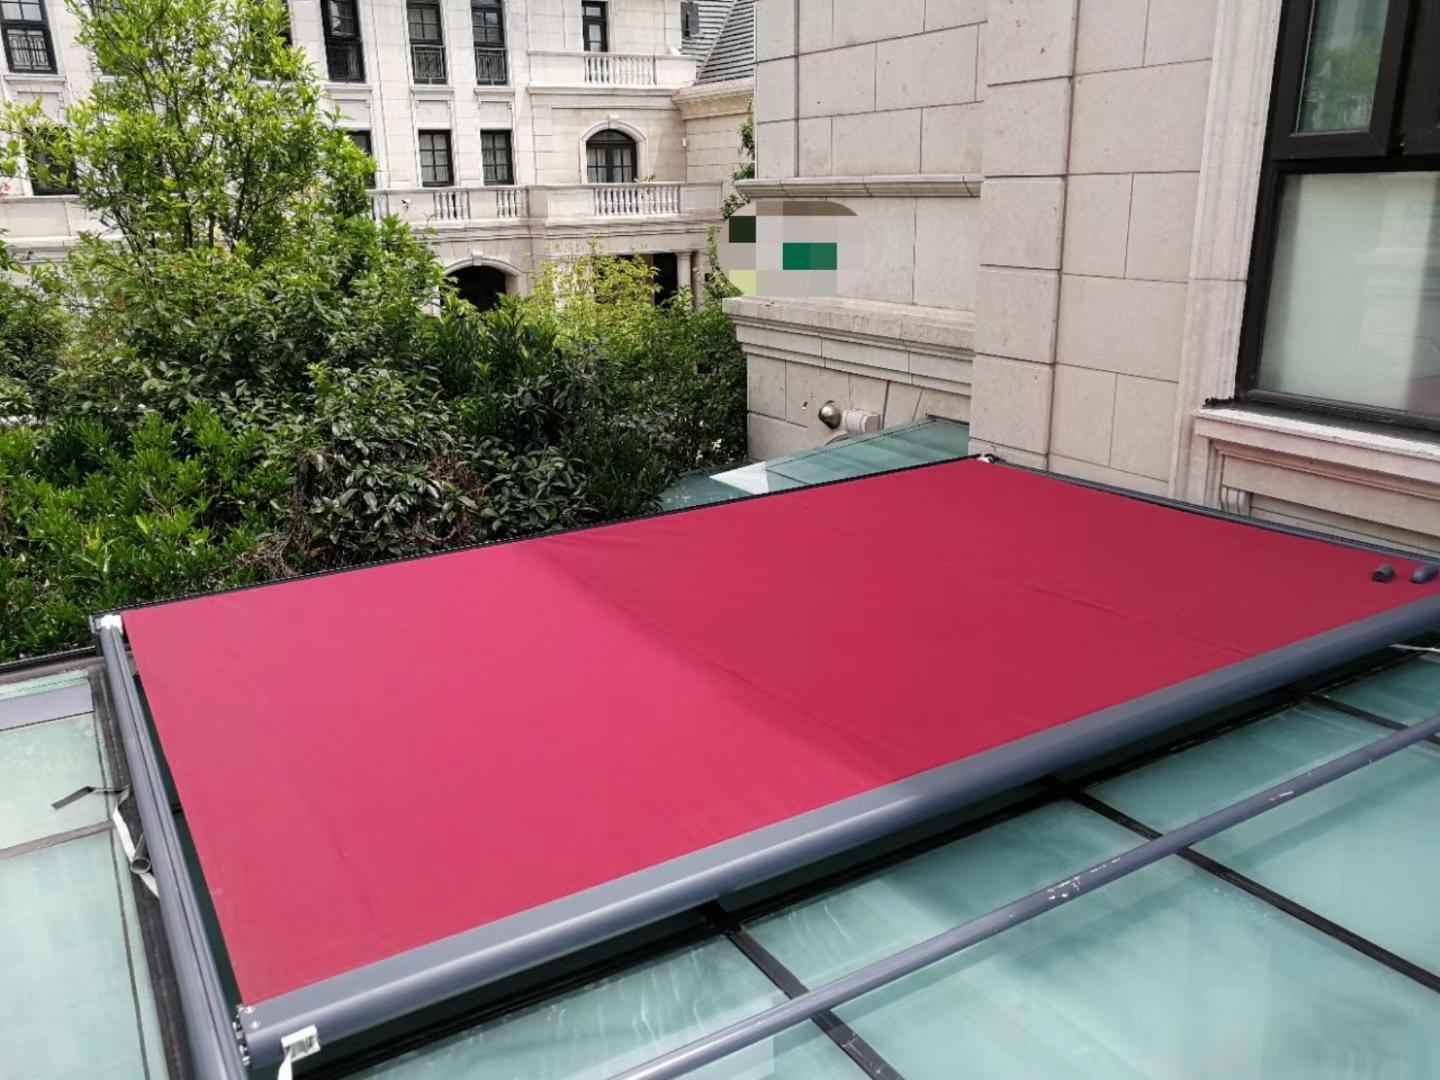 户外全盒曲臂遮阳篷 - 北京亚美特窗饰技术有限公司